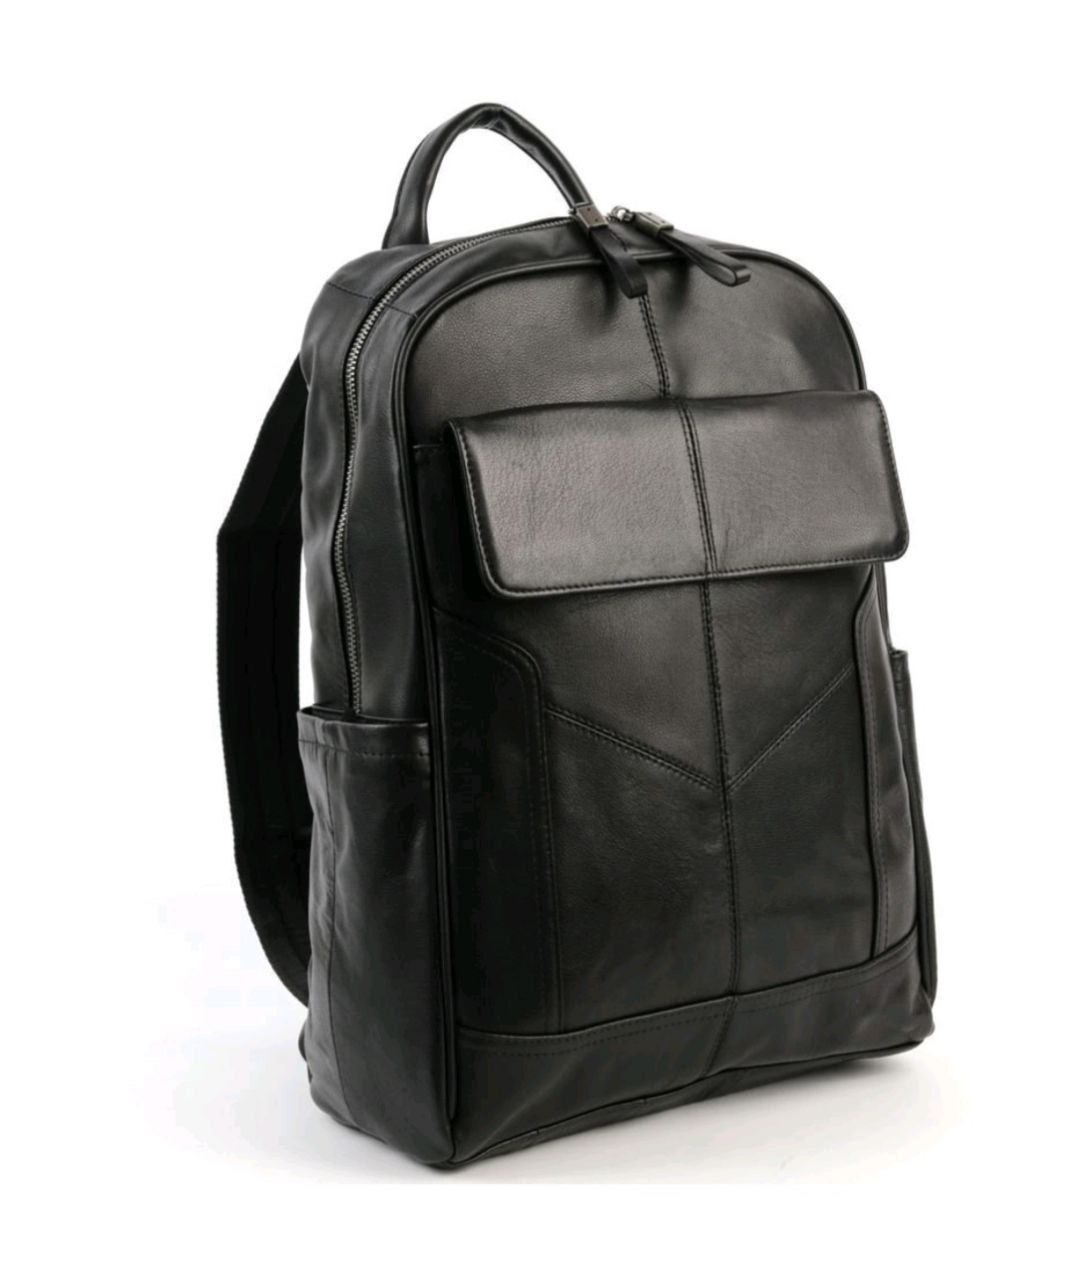 Рюкзак мужской TAYBR TAY-8226 черный, 39x27x13 см